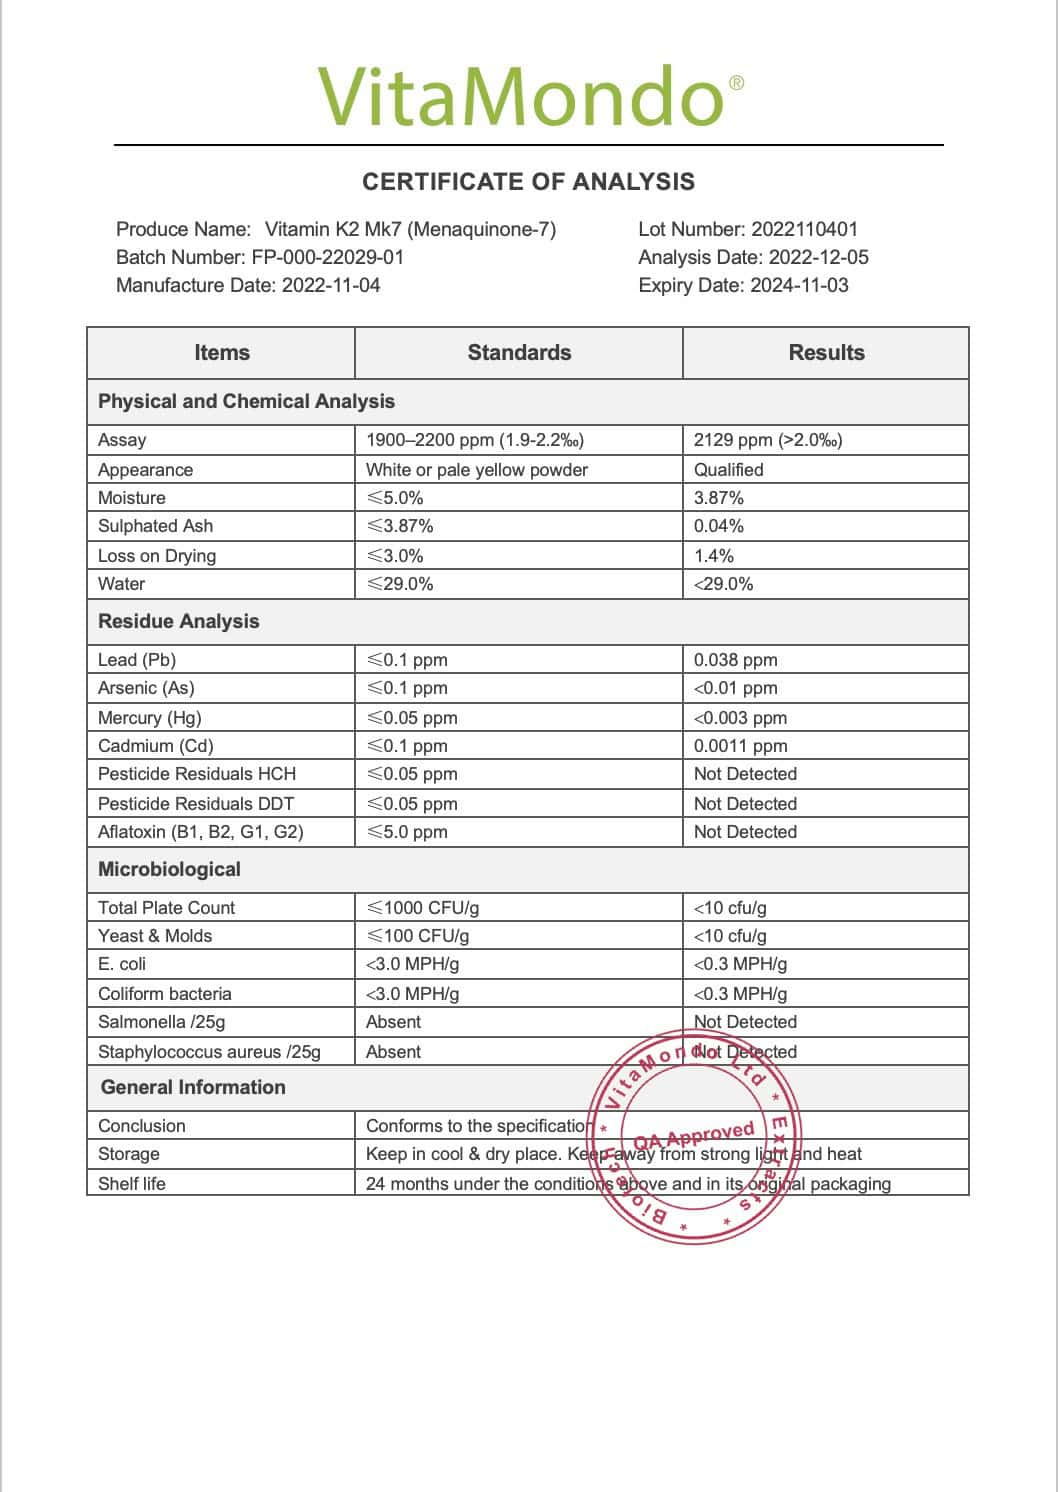 Premium Vitamin K2 Mk7 0.2% Menaquinone COA VitaMondo stamped